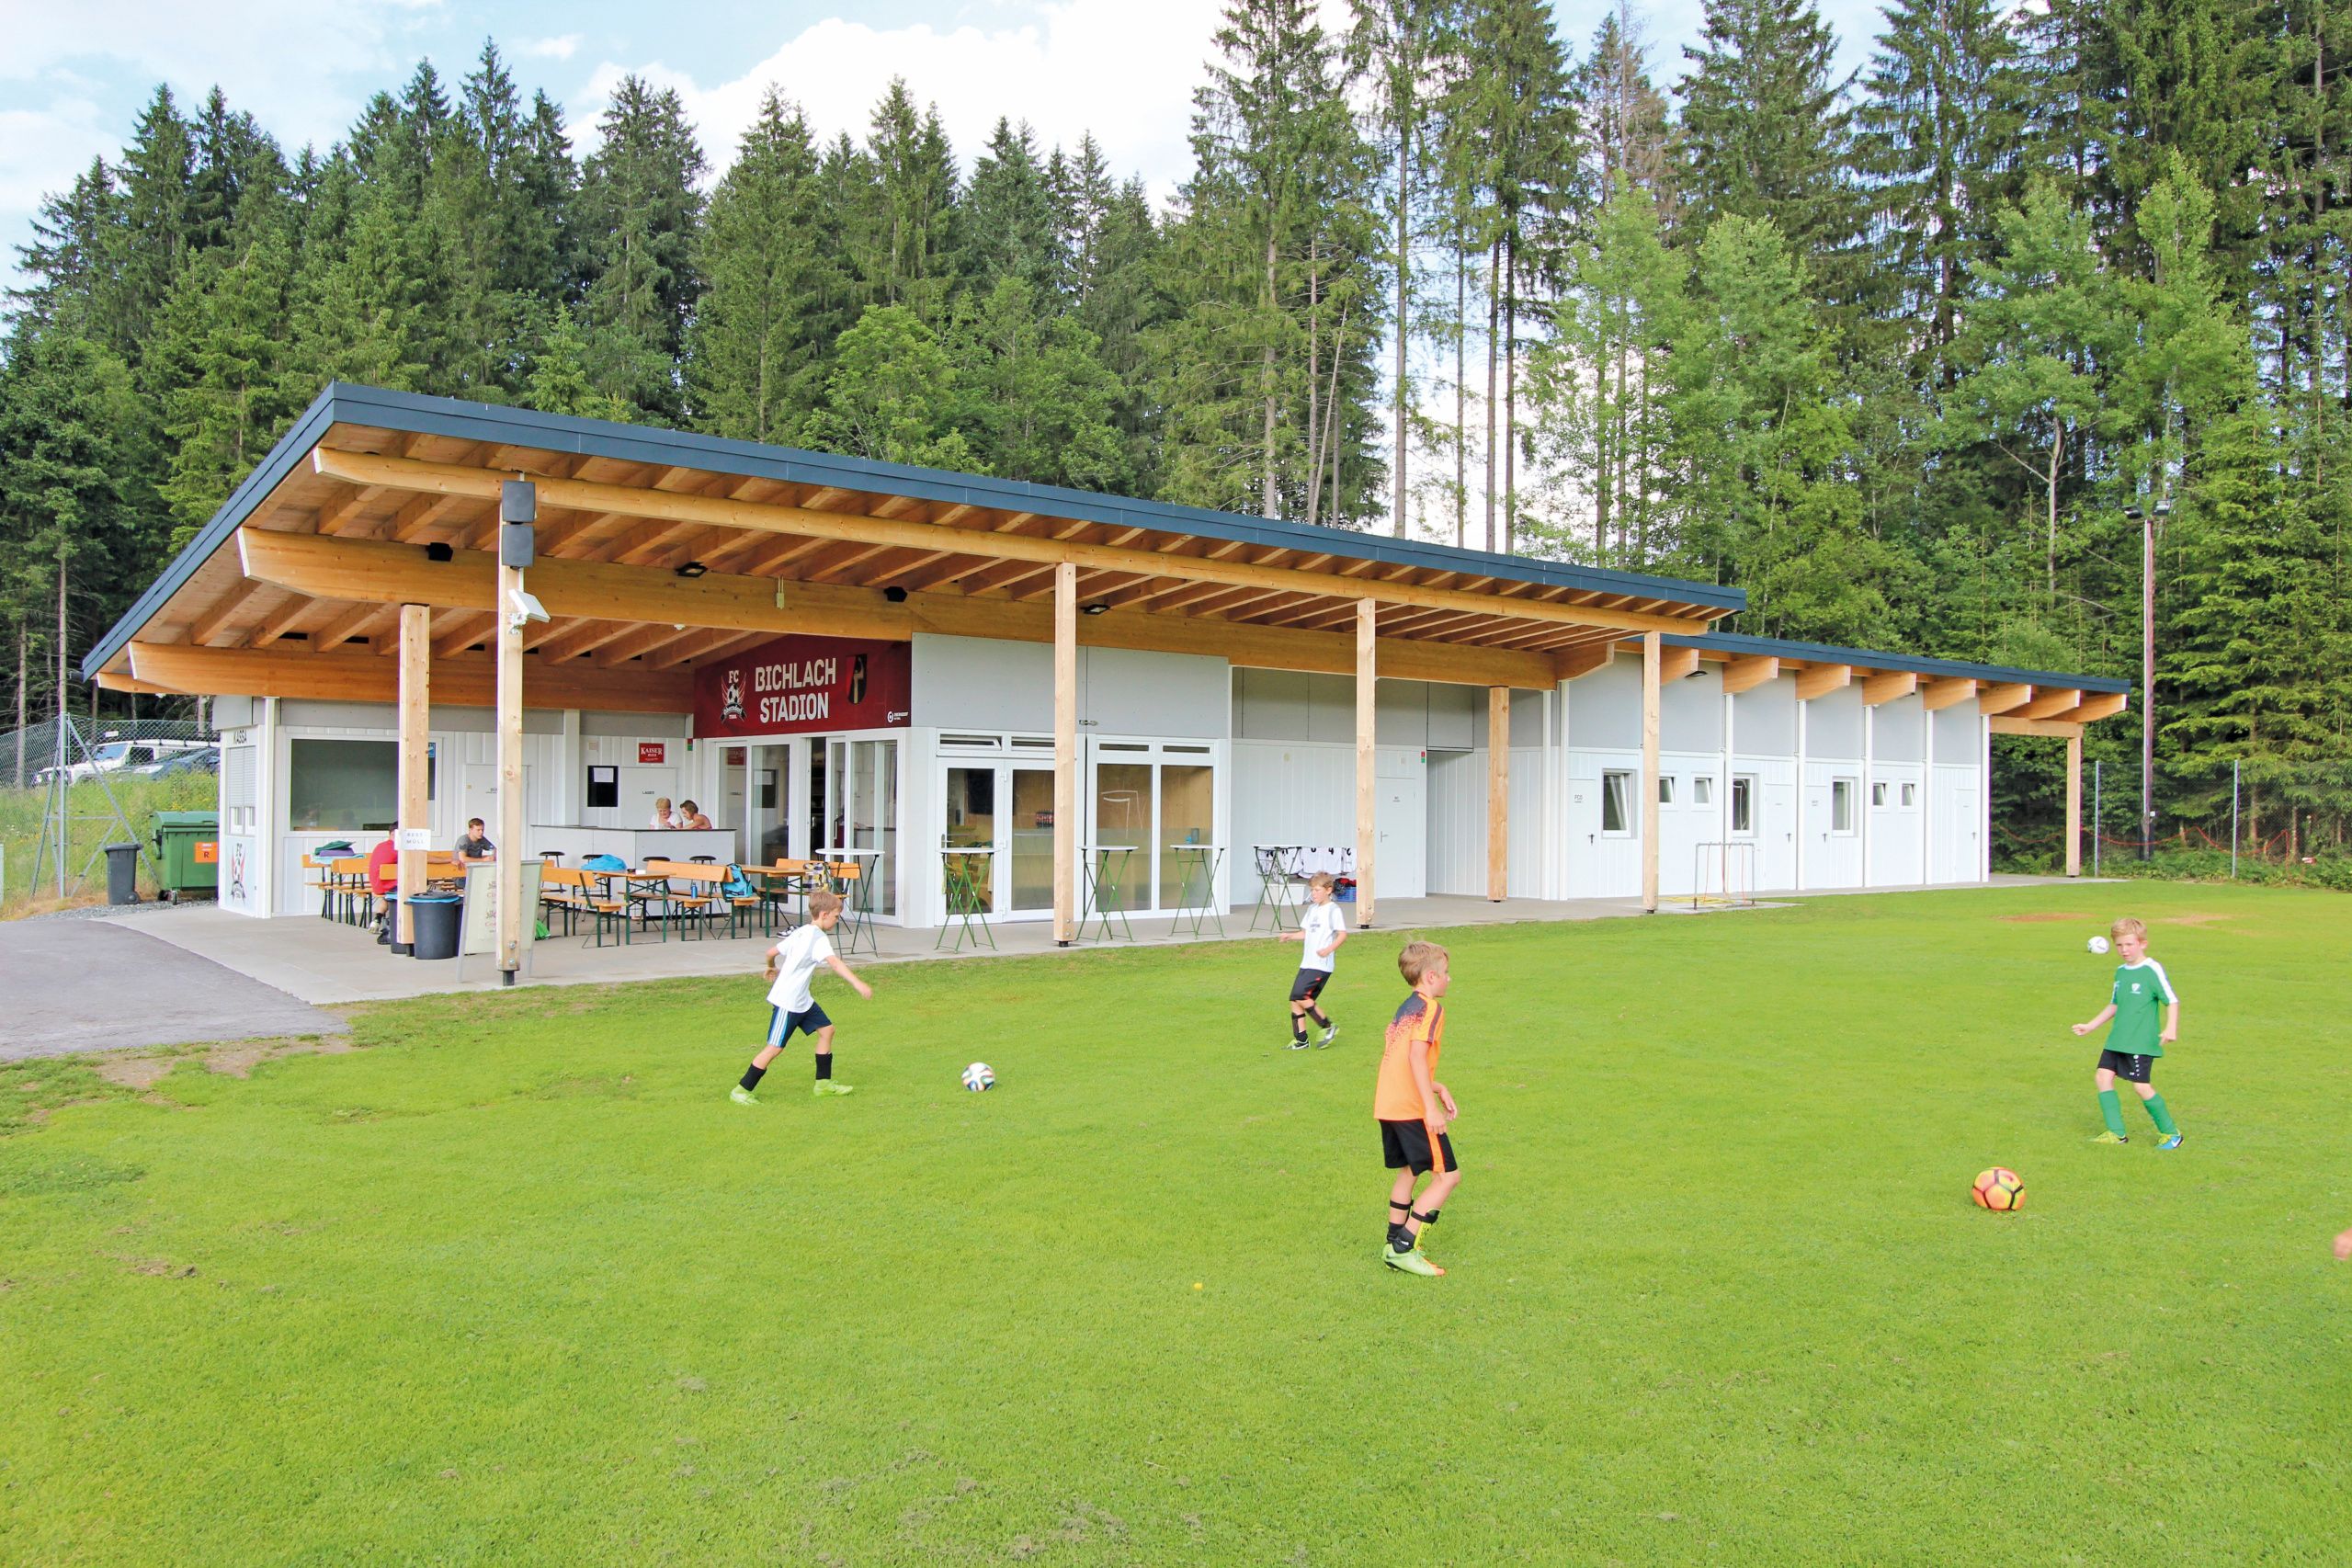 Logement pour le club sportif de football "FC Oberndorf" à Oberndorf dans le Tyrol, AT.